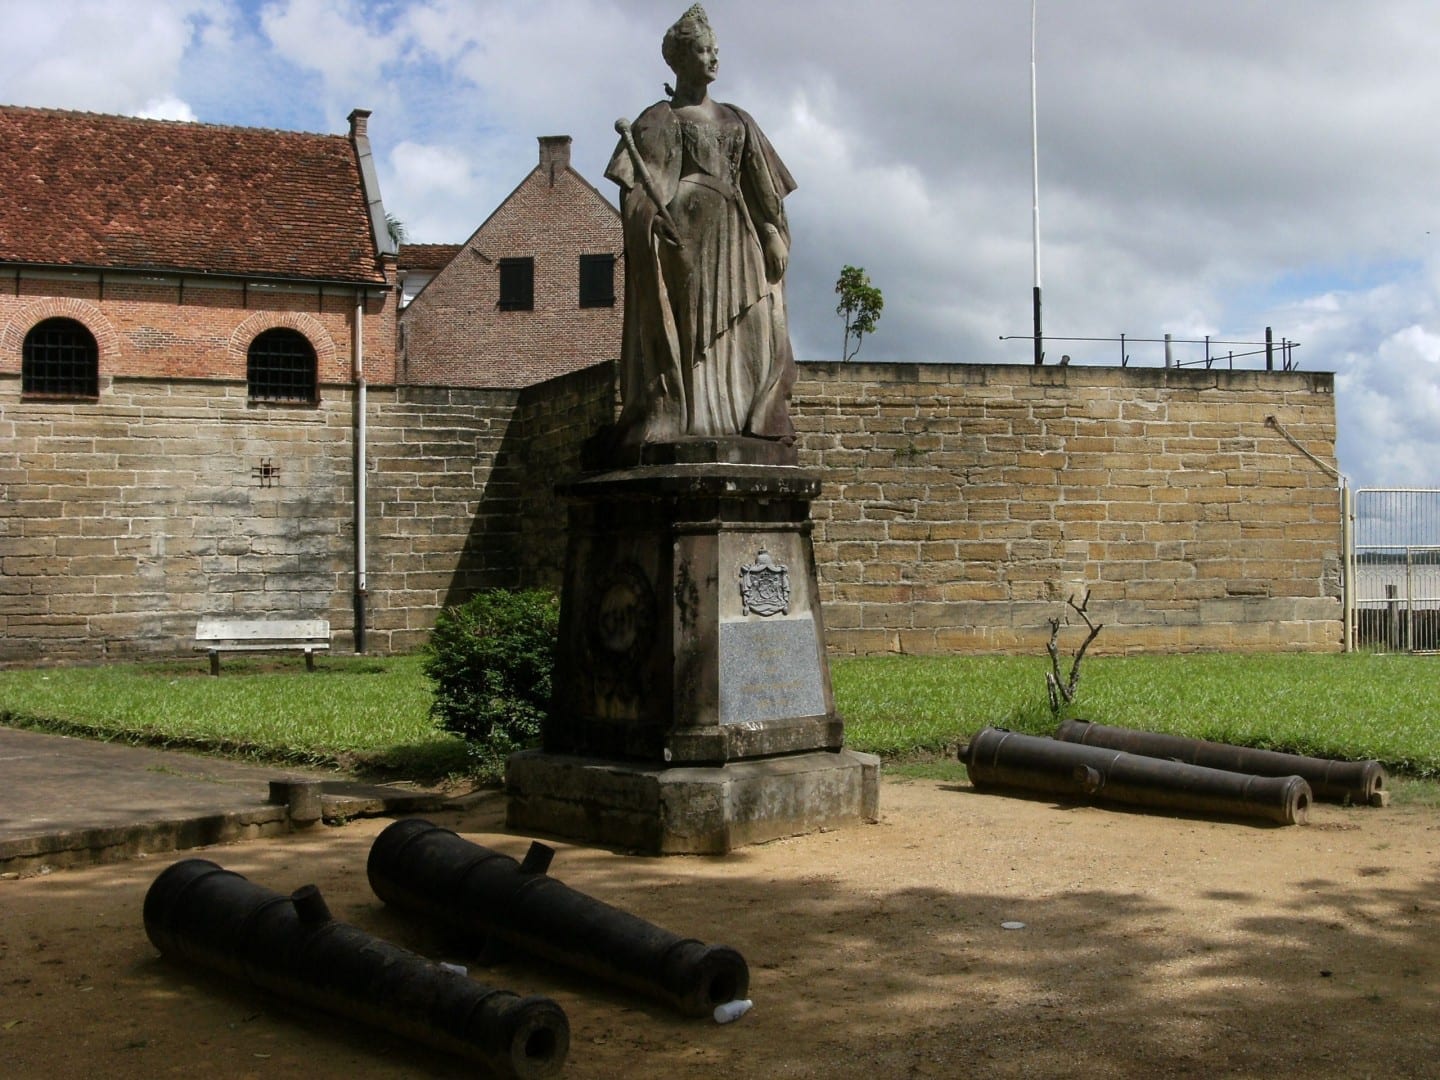 Cuando Surinam se independizó, la estatua de bronce de 1923 de la Reina holandesa Wilhelmina fue trasladada de lo que ahora es la Plaza de la Independencia a este lugar. Surinam